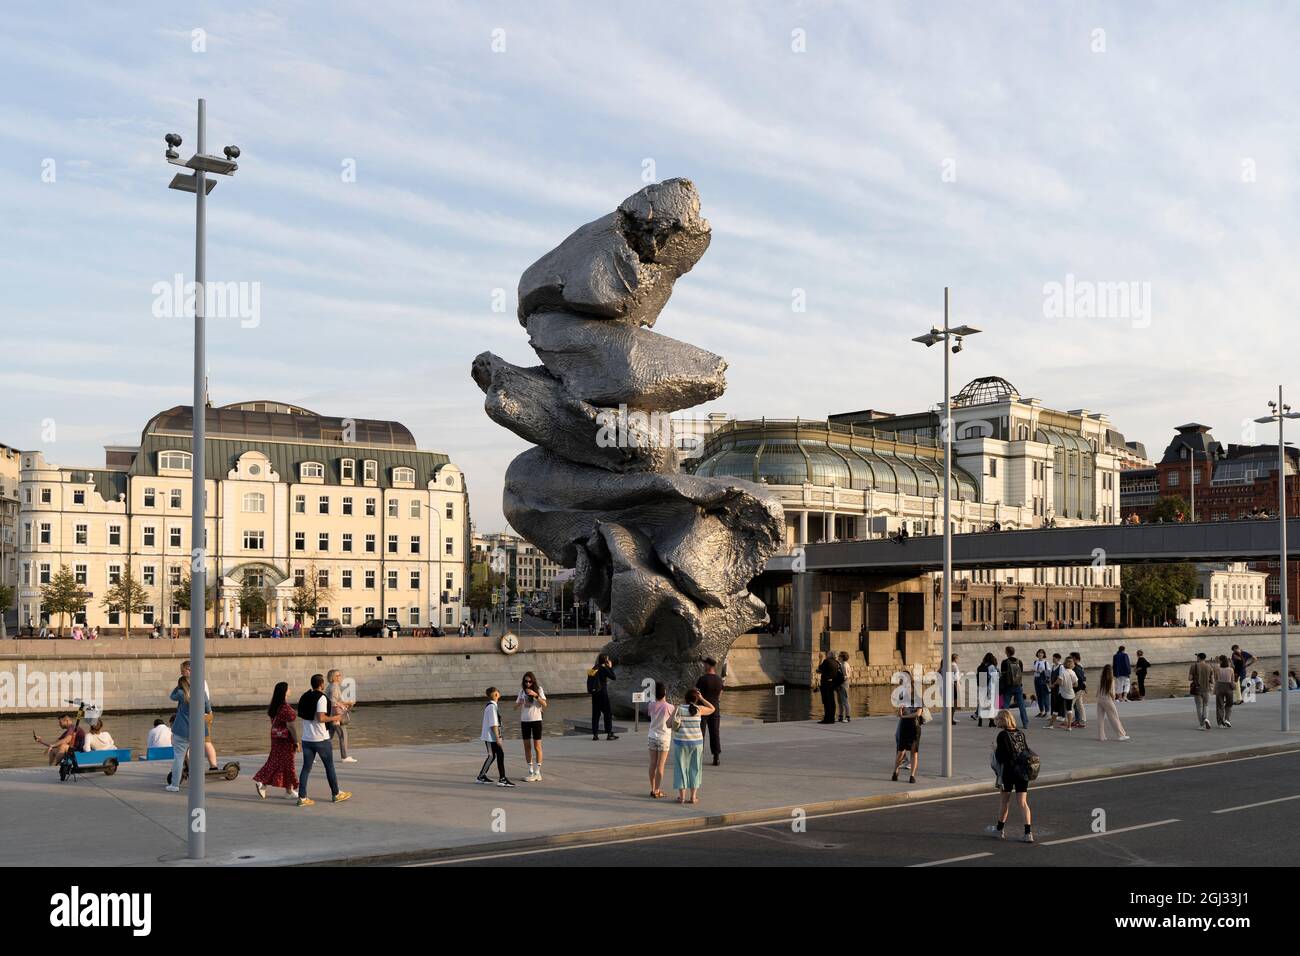 Moskau, Russland - 31. August 2021: Skulptur von Urs Fischer Big Clay 4 auf dem Bolotnaja-Damm in Moskau. Stadtbild und Böschung mit Urlaubern im Sommer. Hochwertige Fotos Stockfoto